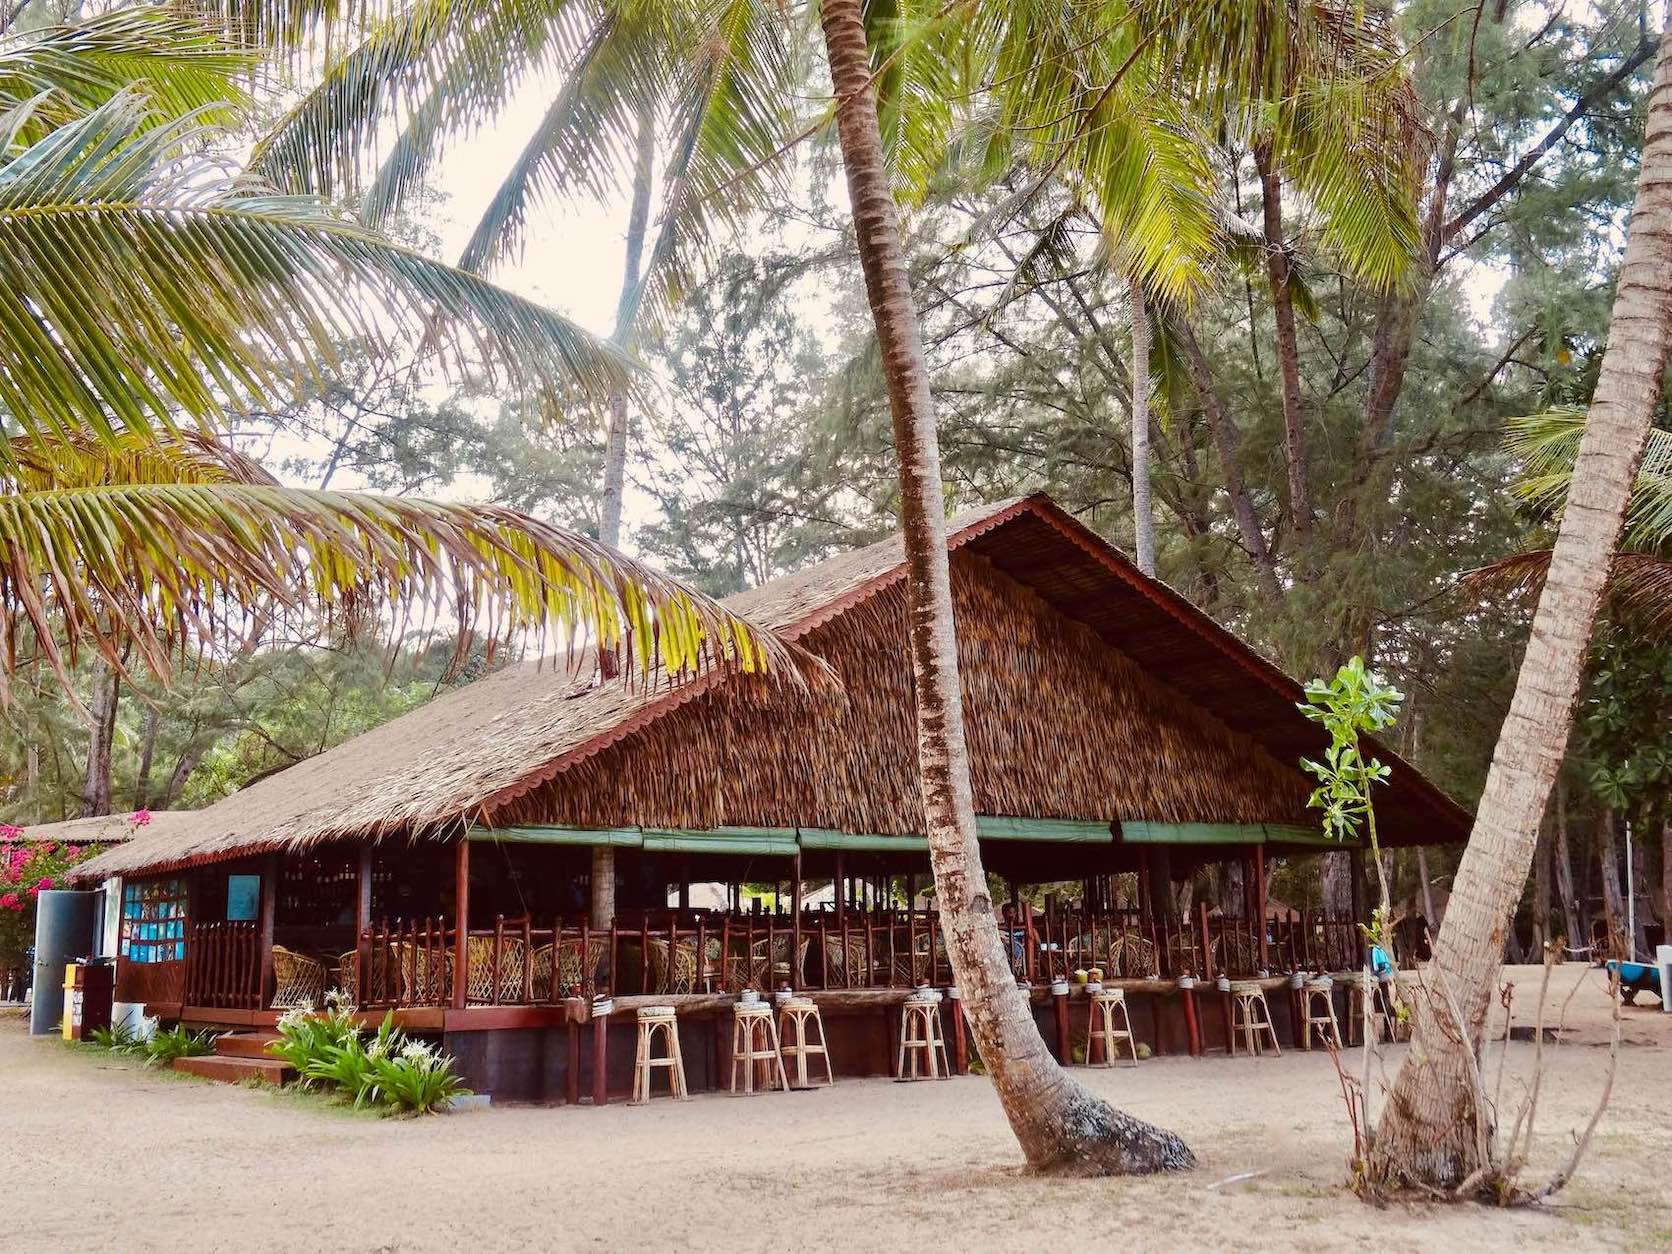 Sea Gypsy Village Sibu Island Malaysia.